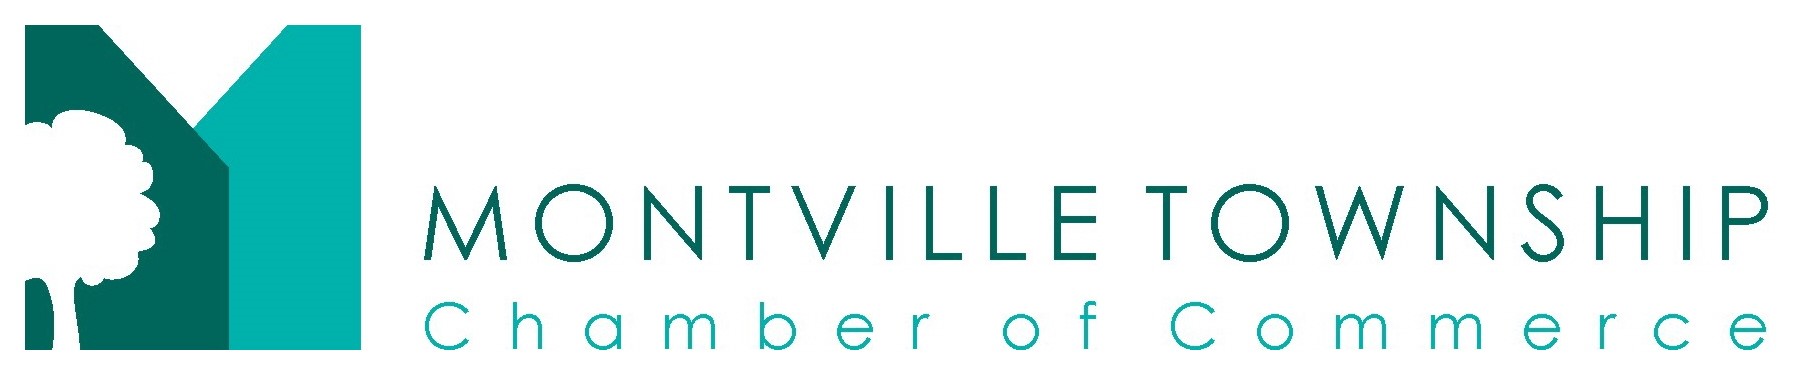 Montville Chamber of Commerce